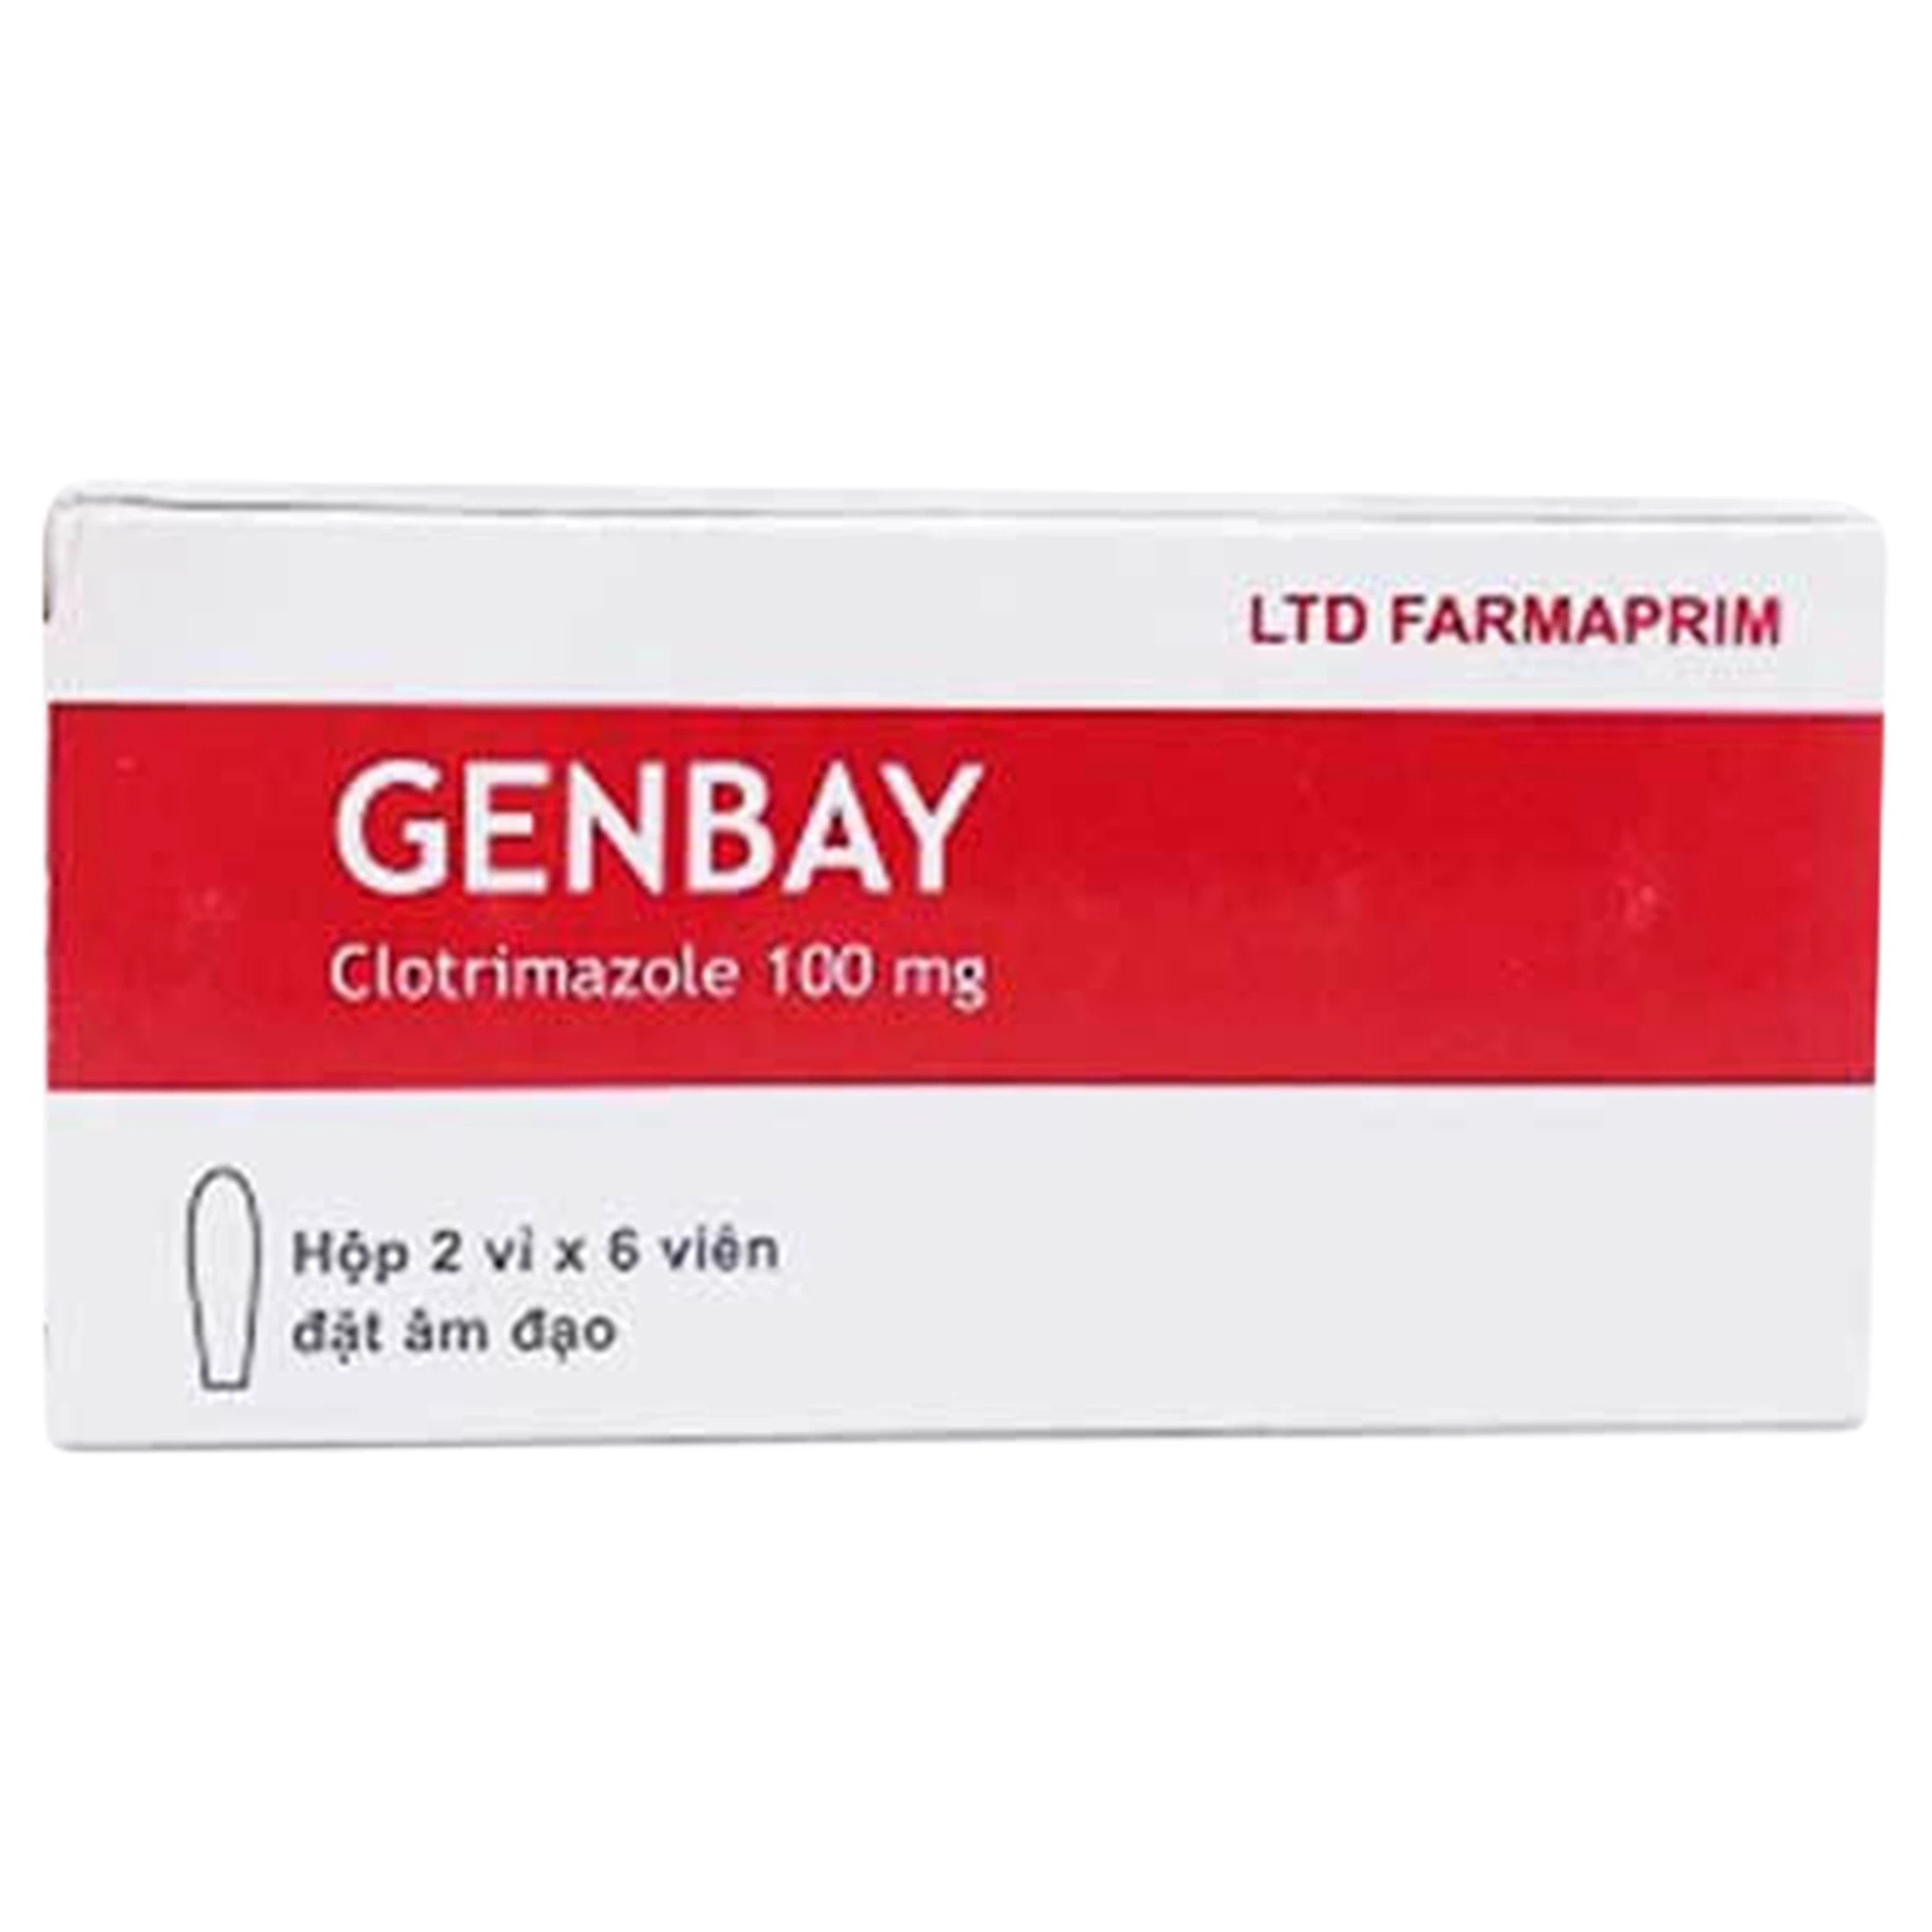 Viên đặt âm đạo Genbay Farmaprim điều trị nhiễm khuẩn, viêm, nấm (2 vỉ x 6 viên)